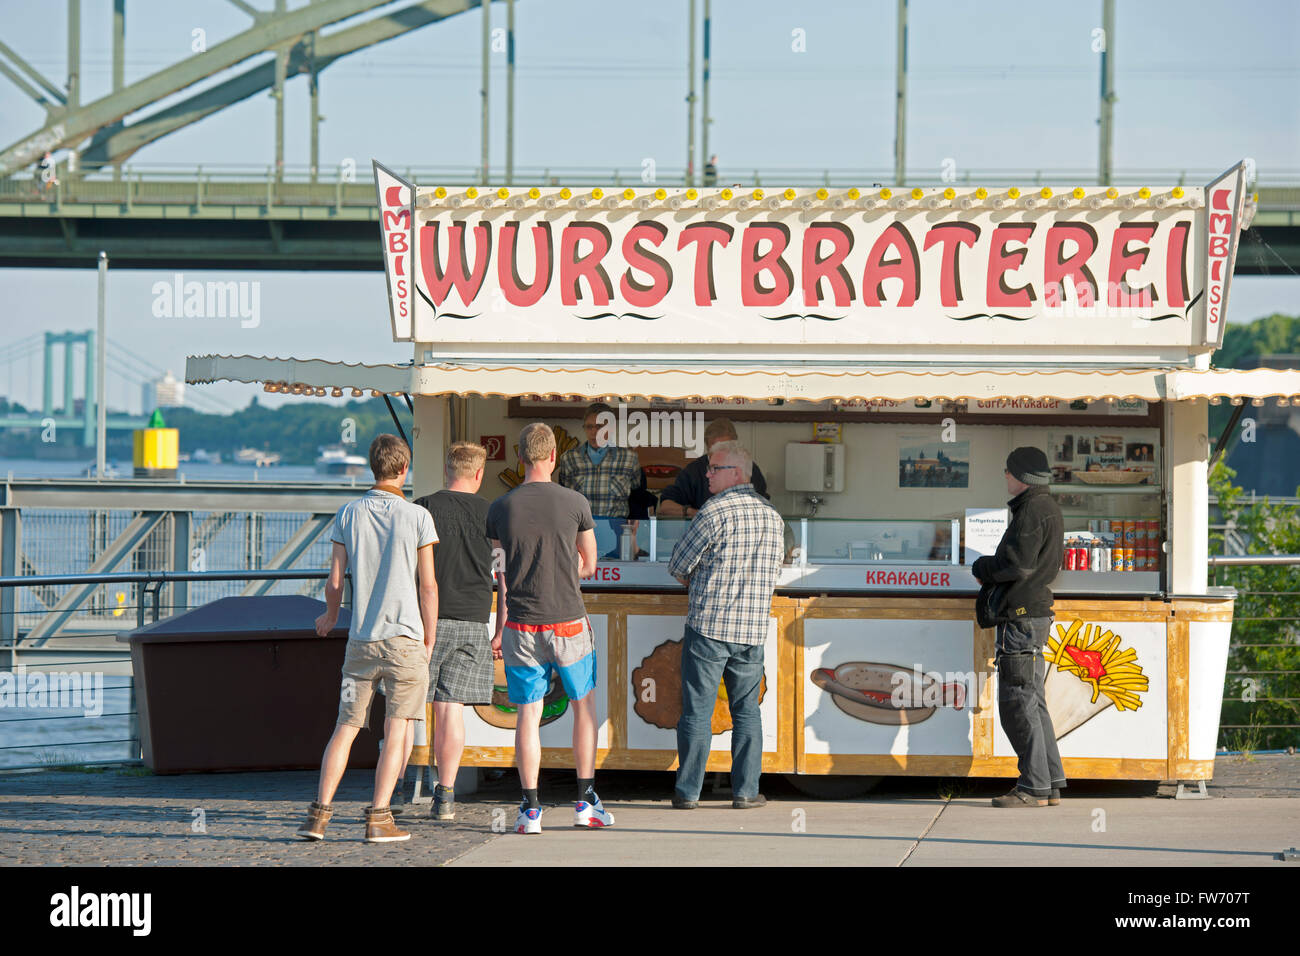 Köln, Neustadt-Süd, Rheinauhafen, Wurstbraterei, Imbisswagen bekannt aus dem Kölner Tatort Foto de stock